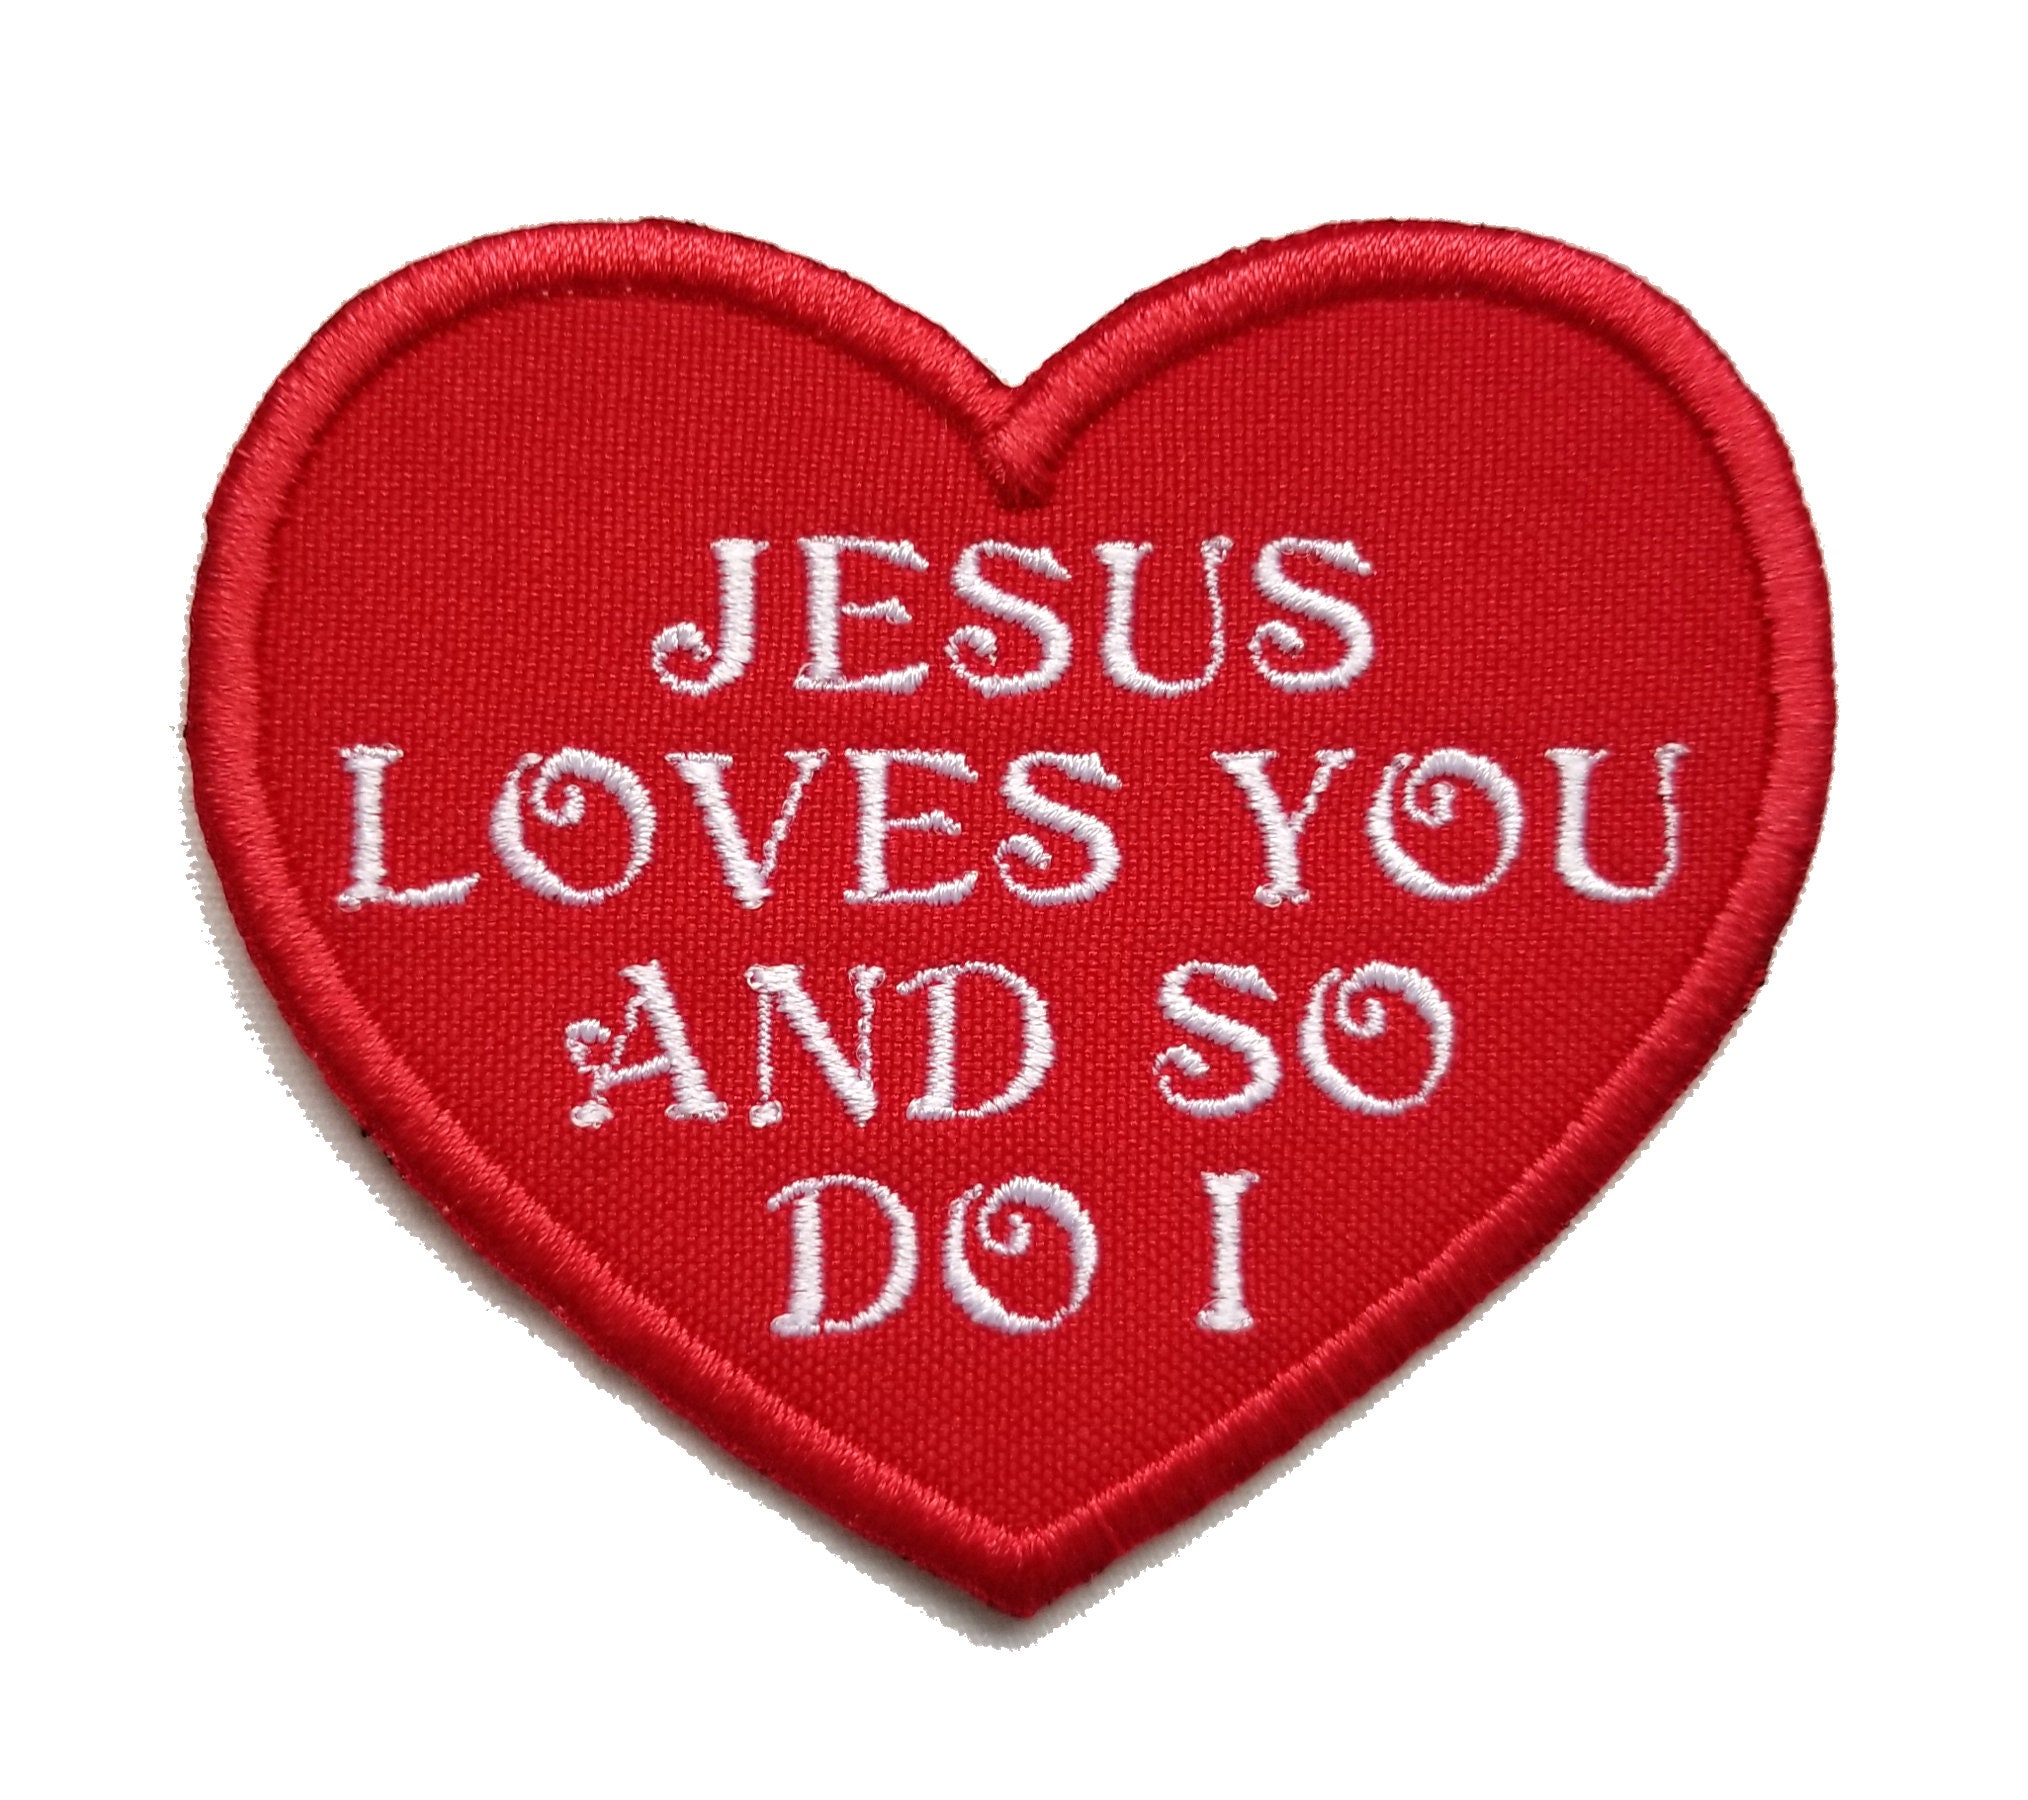 O Lord Jesus, I love You! I really love You!